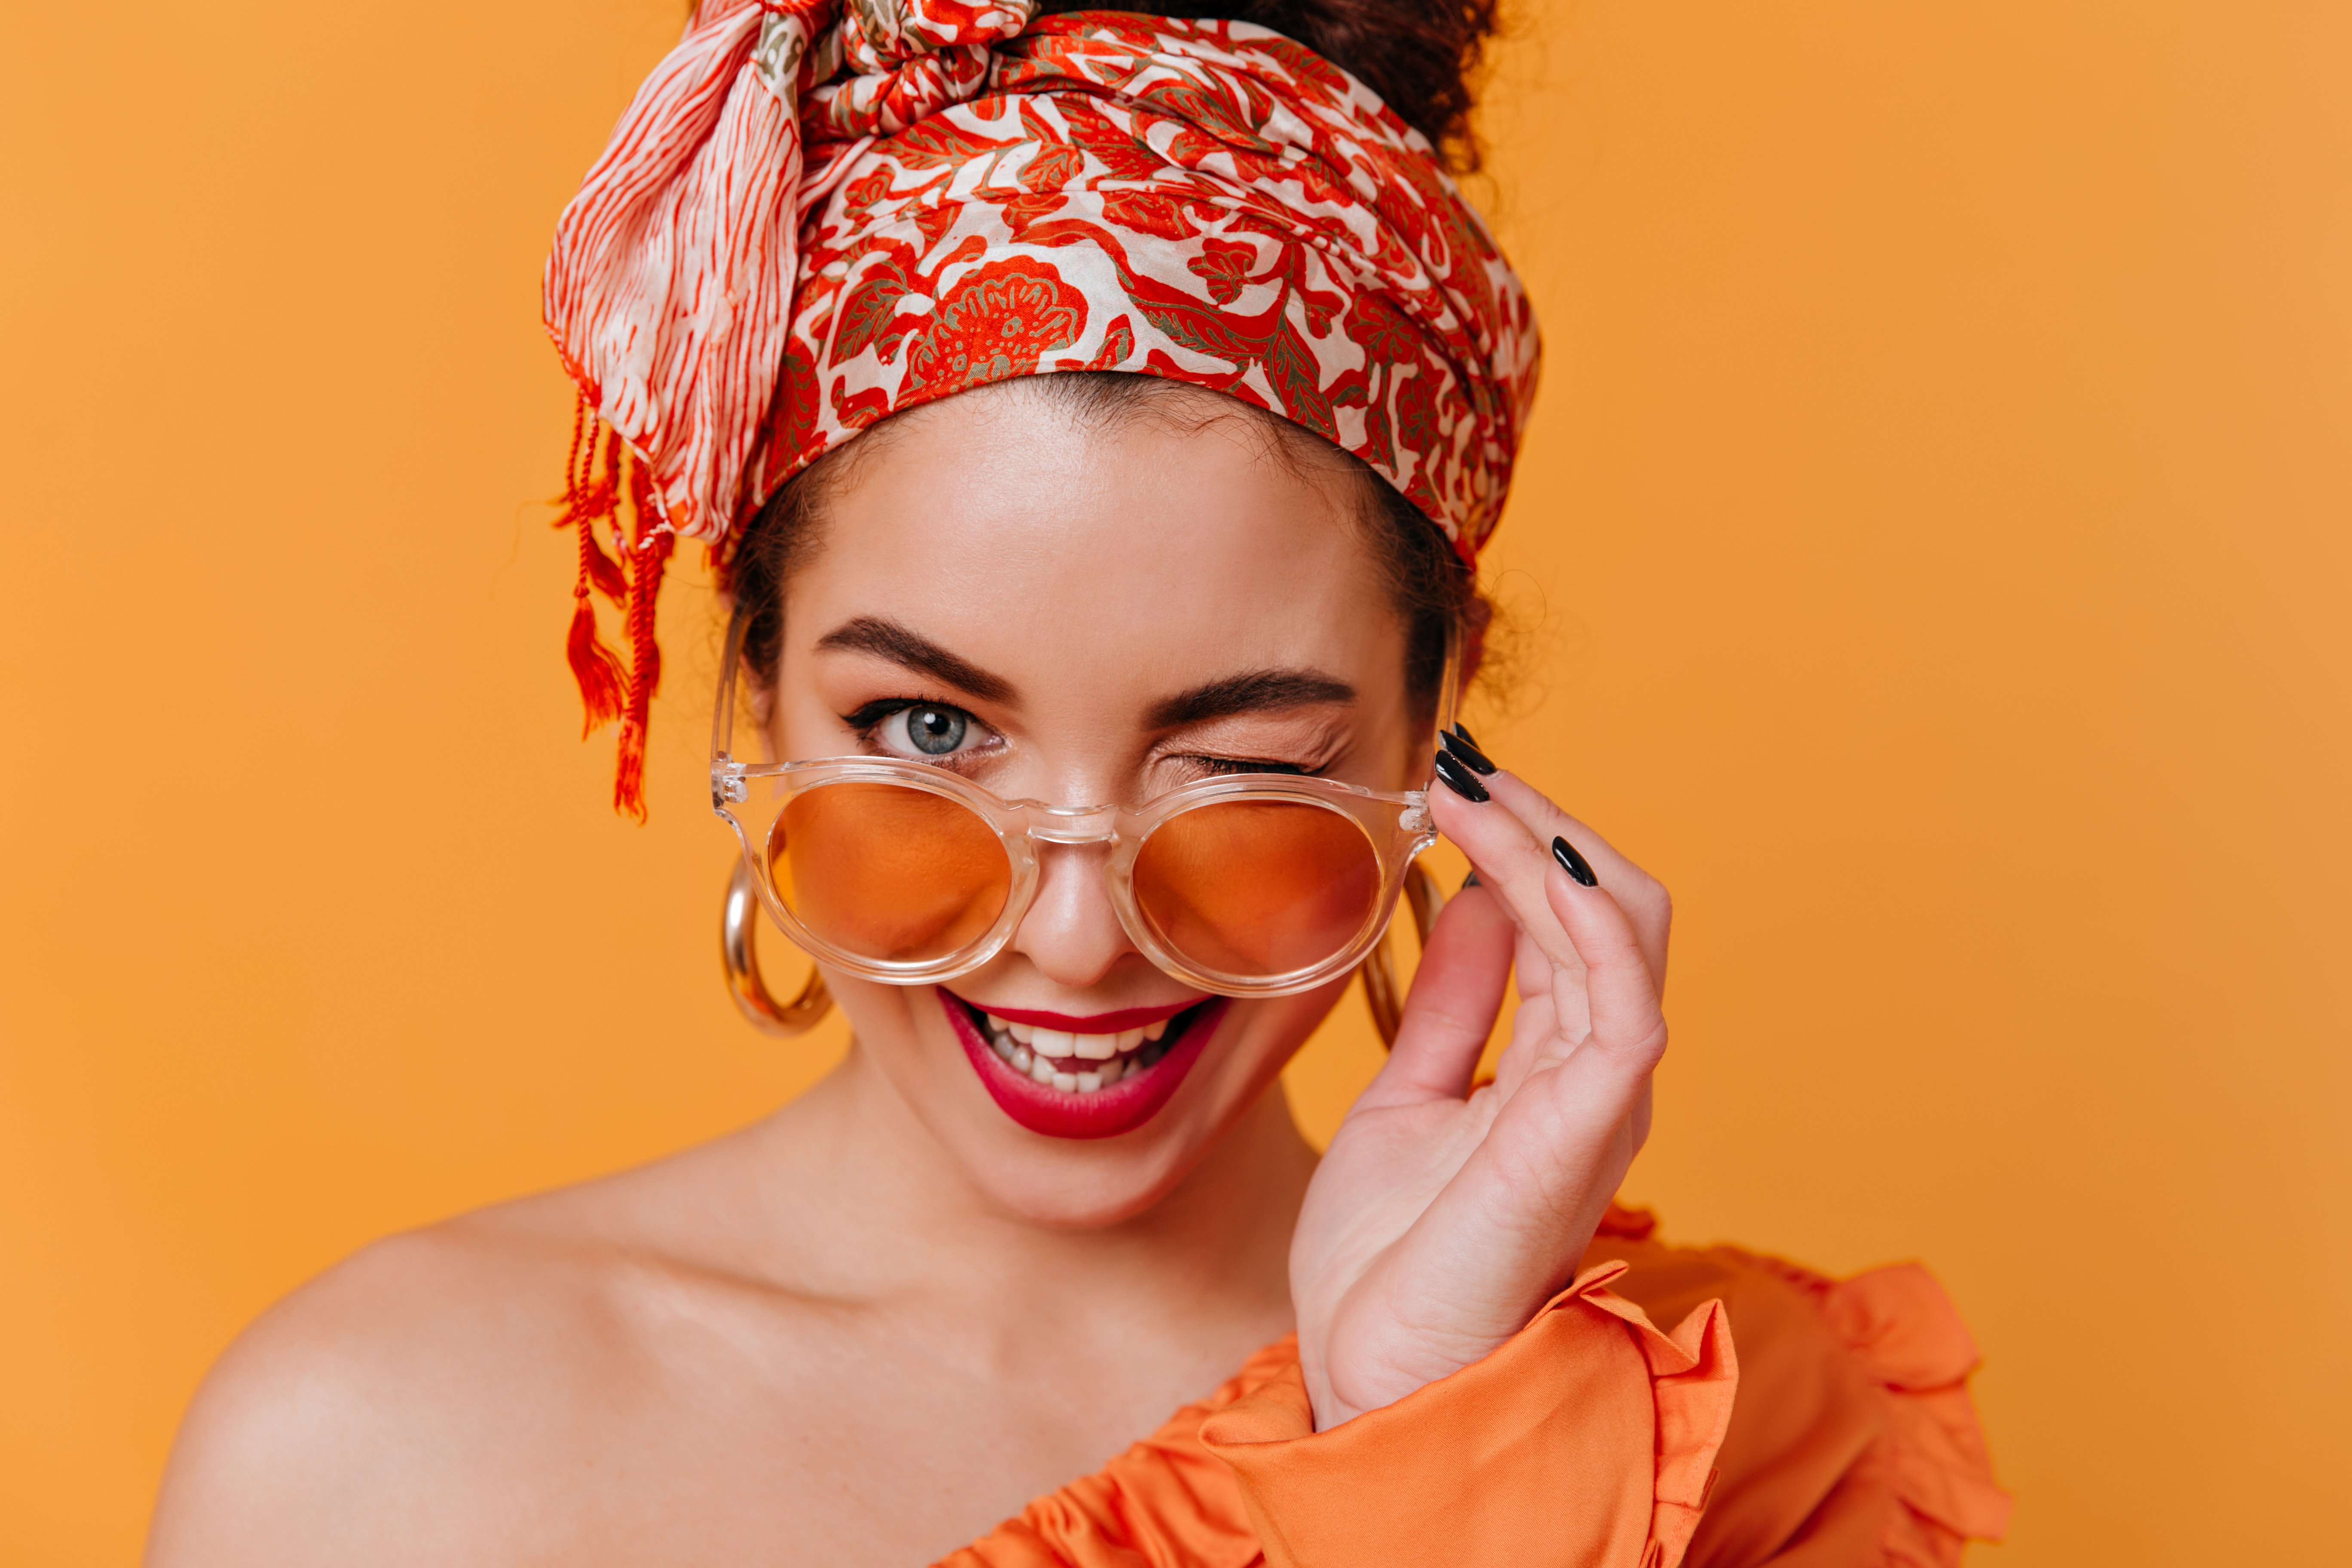 Woman wearing orange hair scarf | Shutterstock